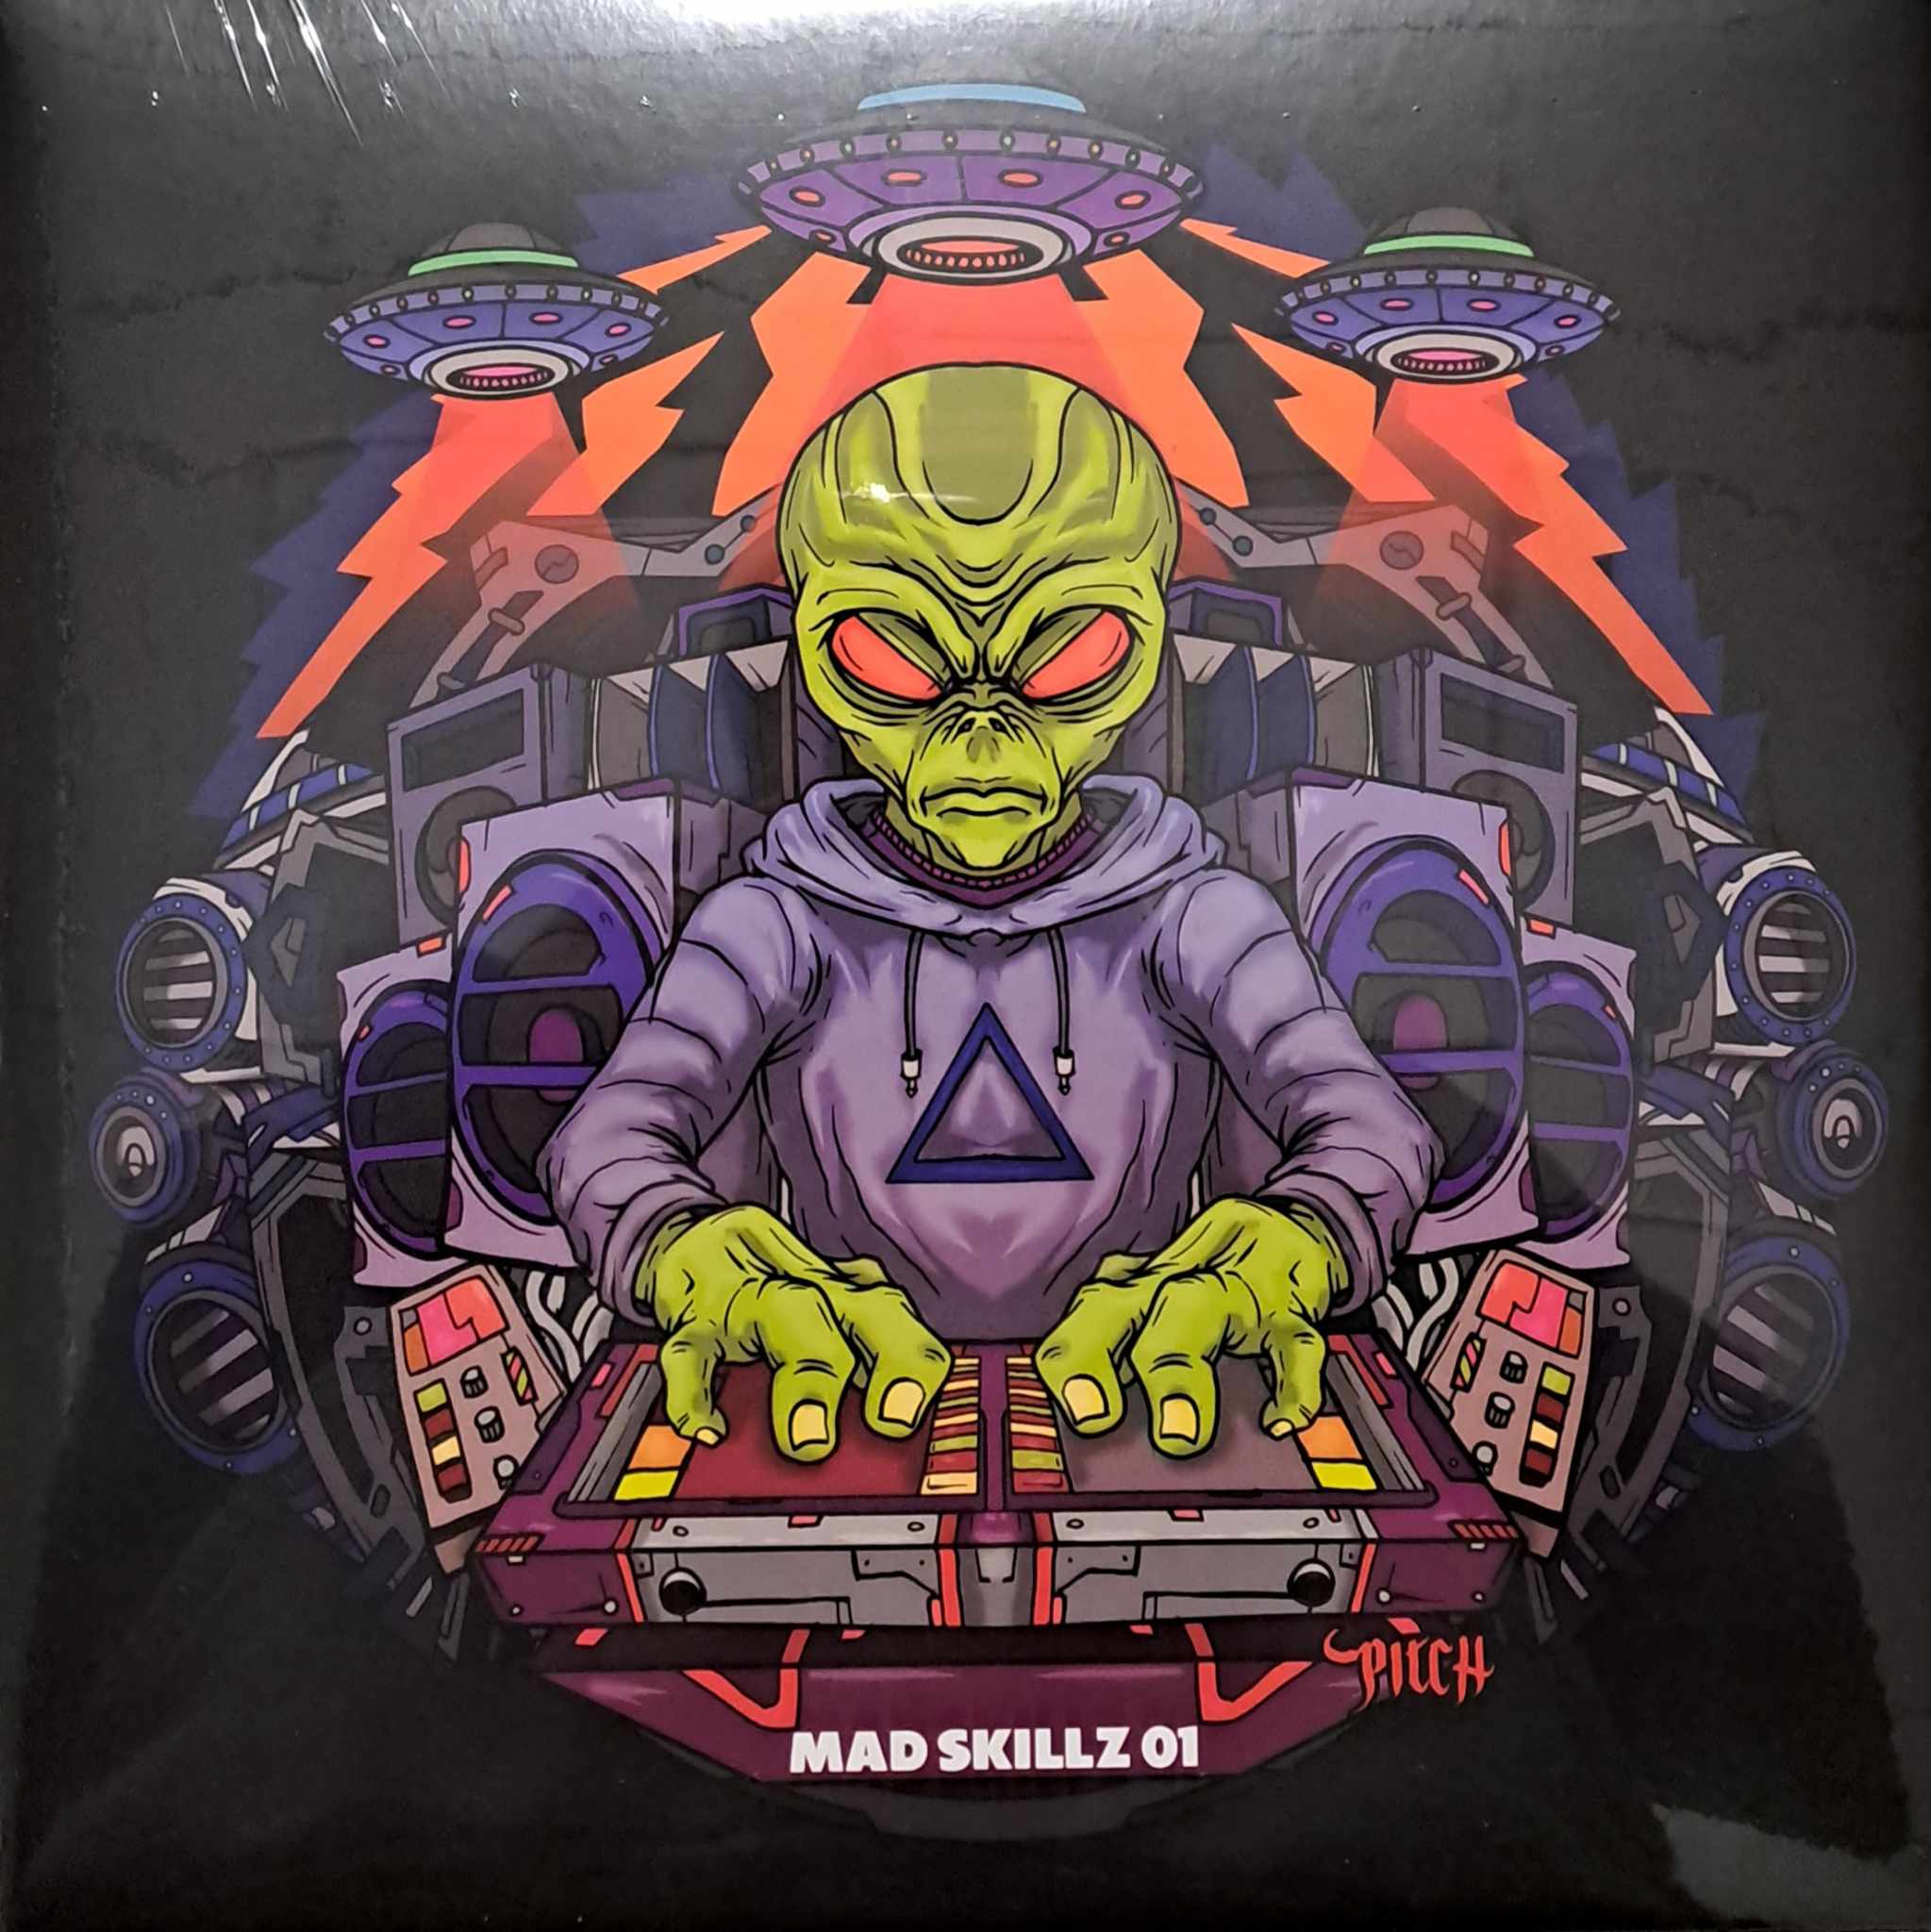 Mad Skillz 01 (toute dernière copie en stock) - vinyle freetekno